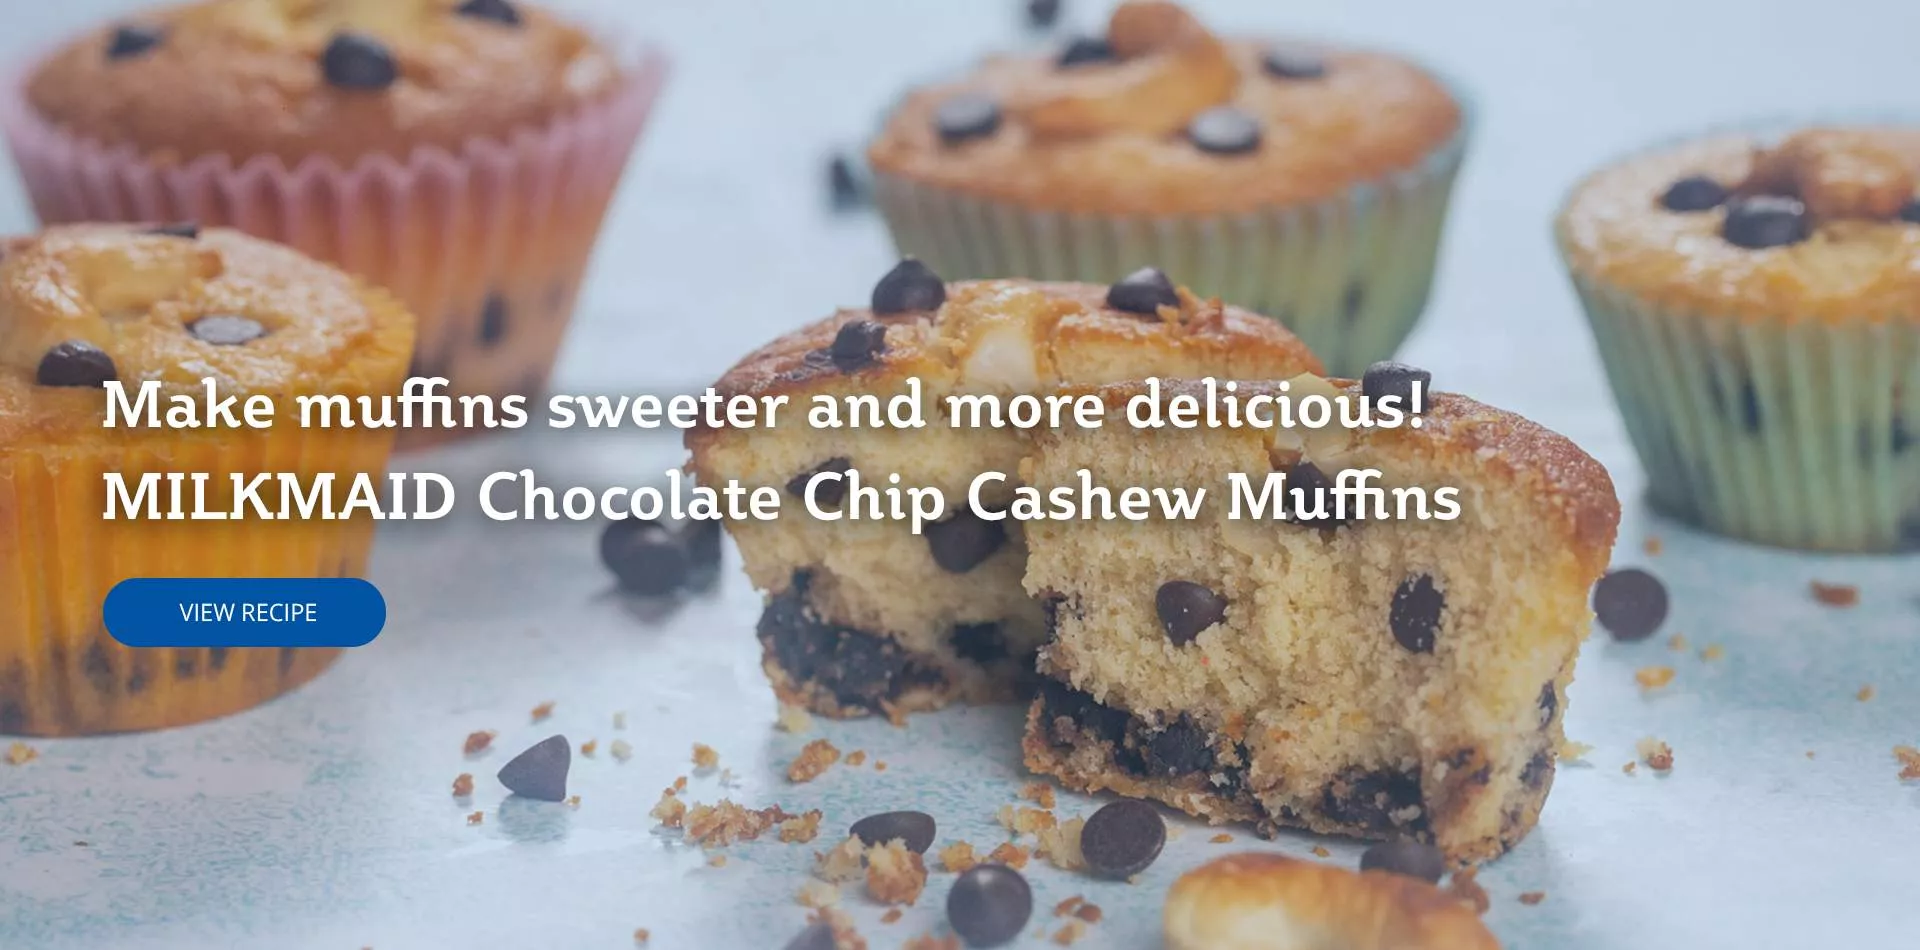 




chocolate chip cashew muffins desktop banner


